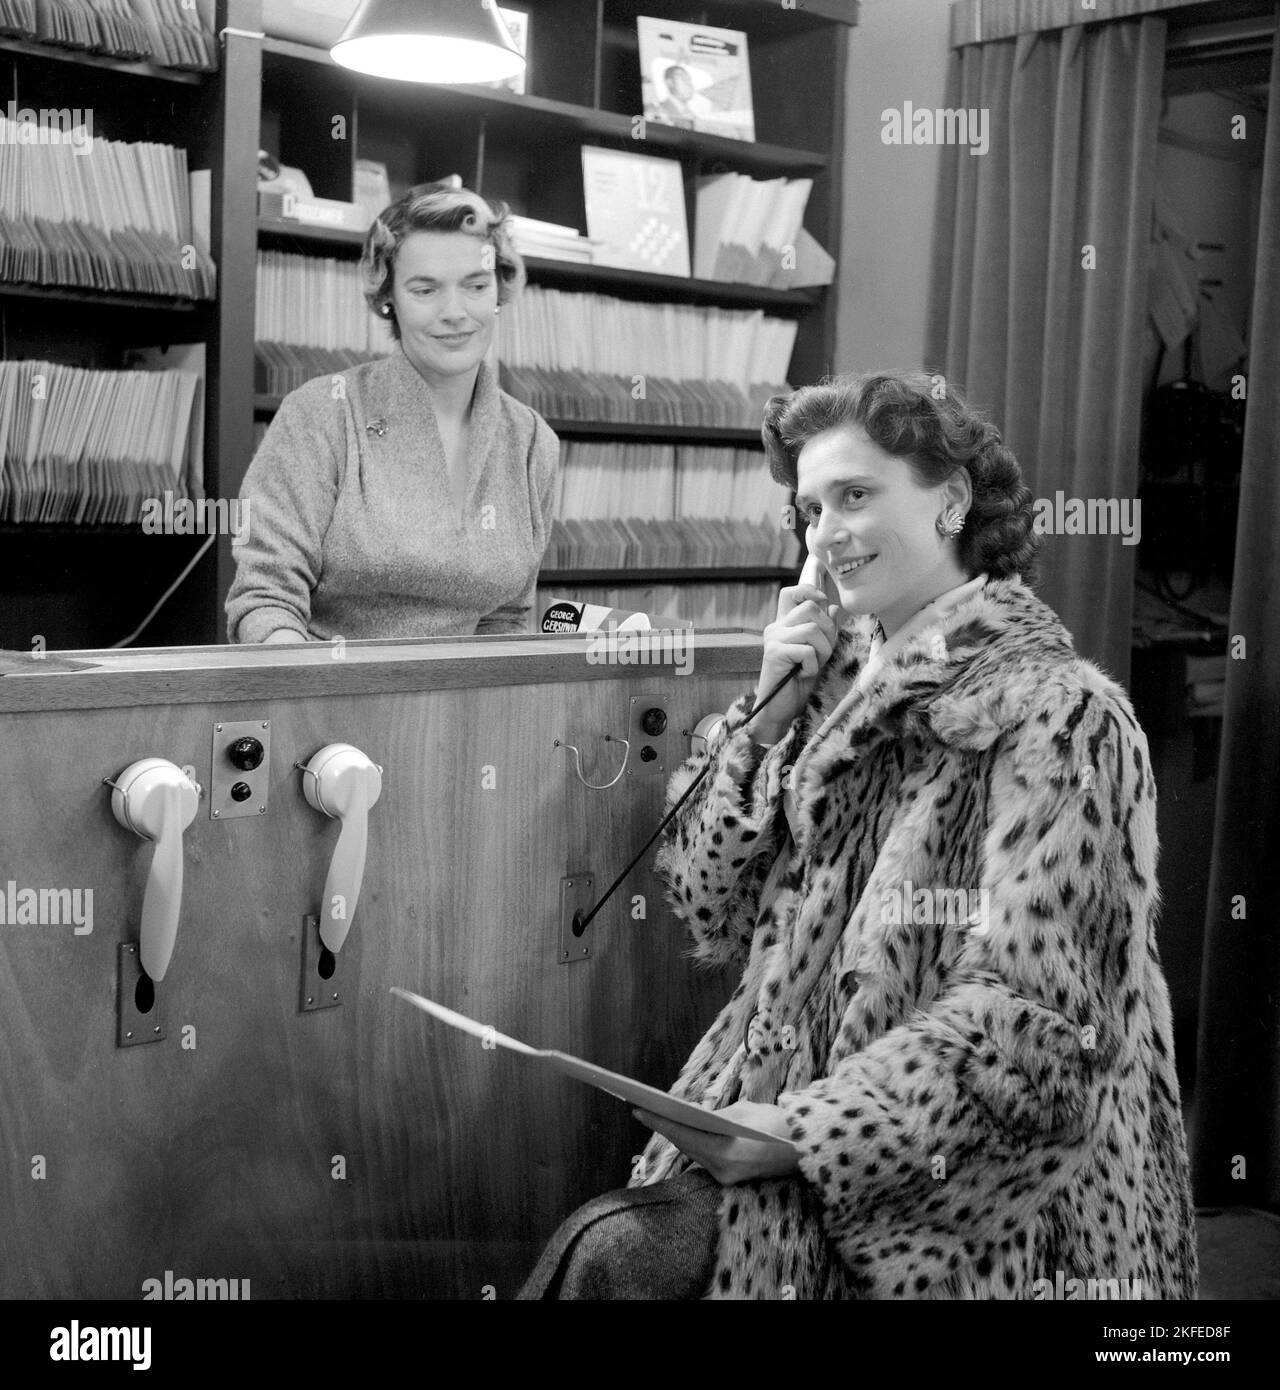 Comment vous avez acheté des disques dans le 1950s. La dame tenant ce qui ressemble à un téléphone écoute en fait un enregistrement. À ce moment-là, il était courant que les clients puissent écouter les dossiers avant de décider des acheter. Le magasin de disques dispose de plusieurs stations d'écoute et d'une femme derrière le comptoir gérant le système. Elle détient un disque portant le nom de George Gershwin. Suède 1950s. Banque D'Images